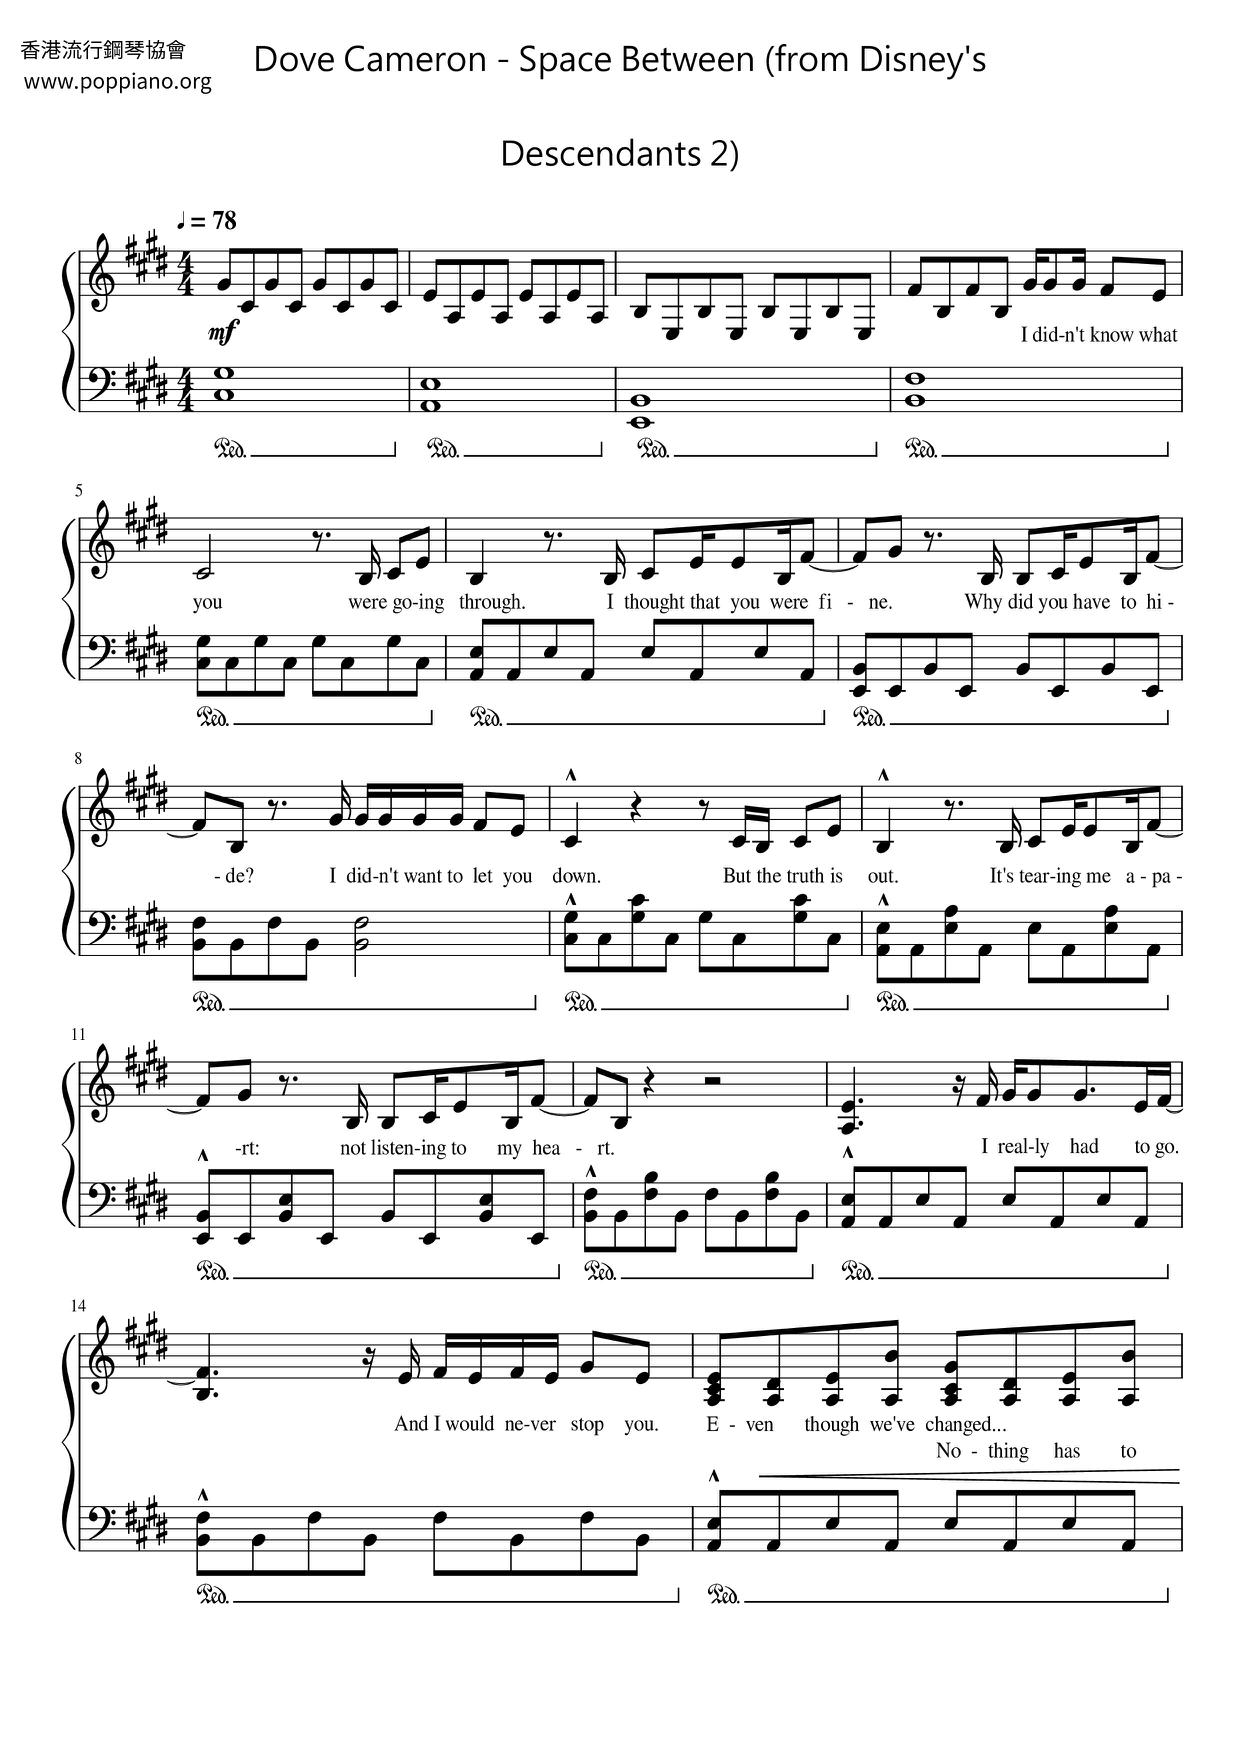 Space Between (from Disney's Descendants 2) Score